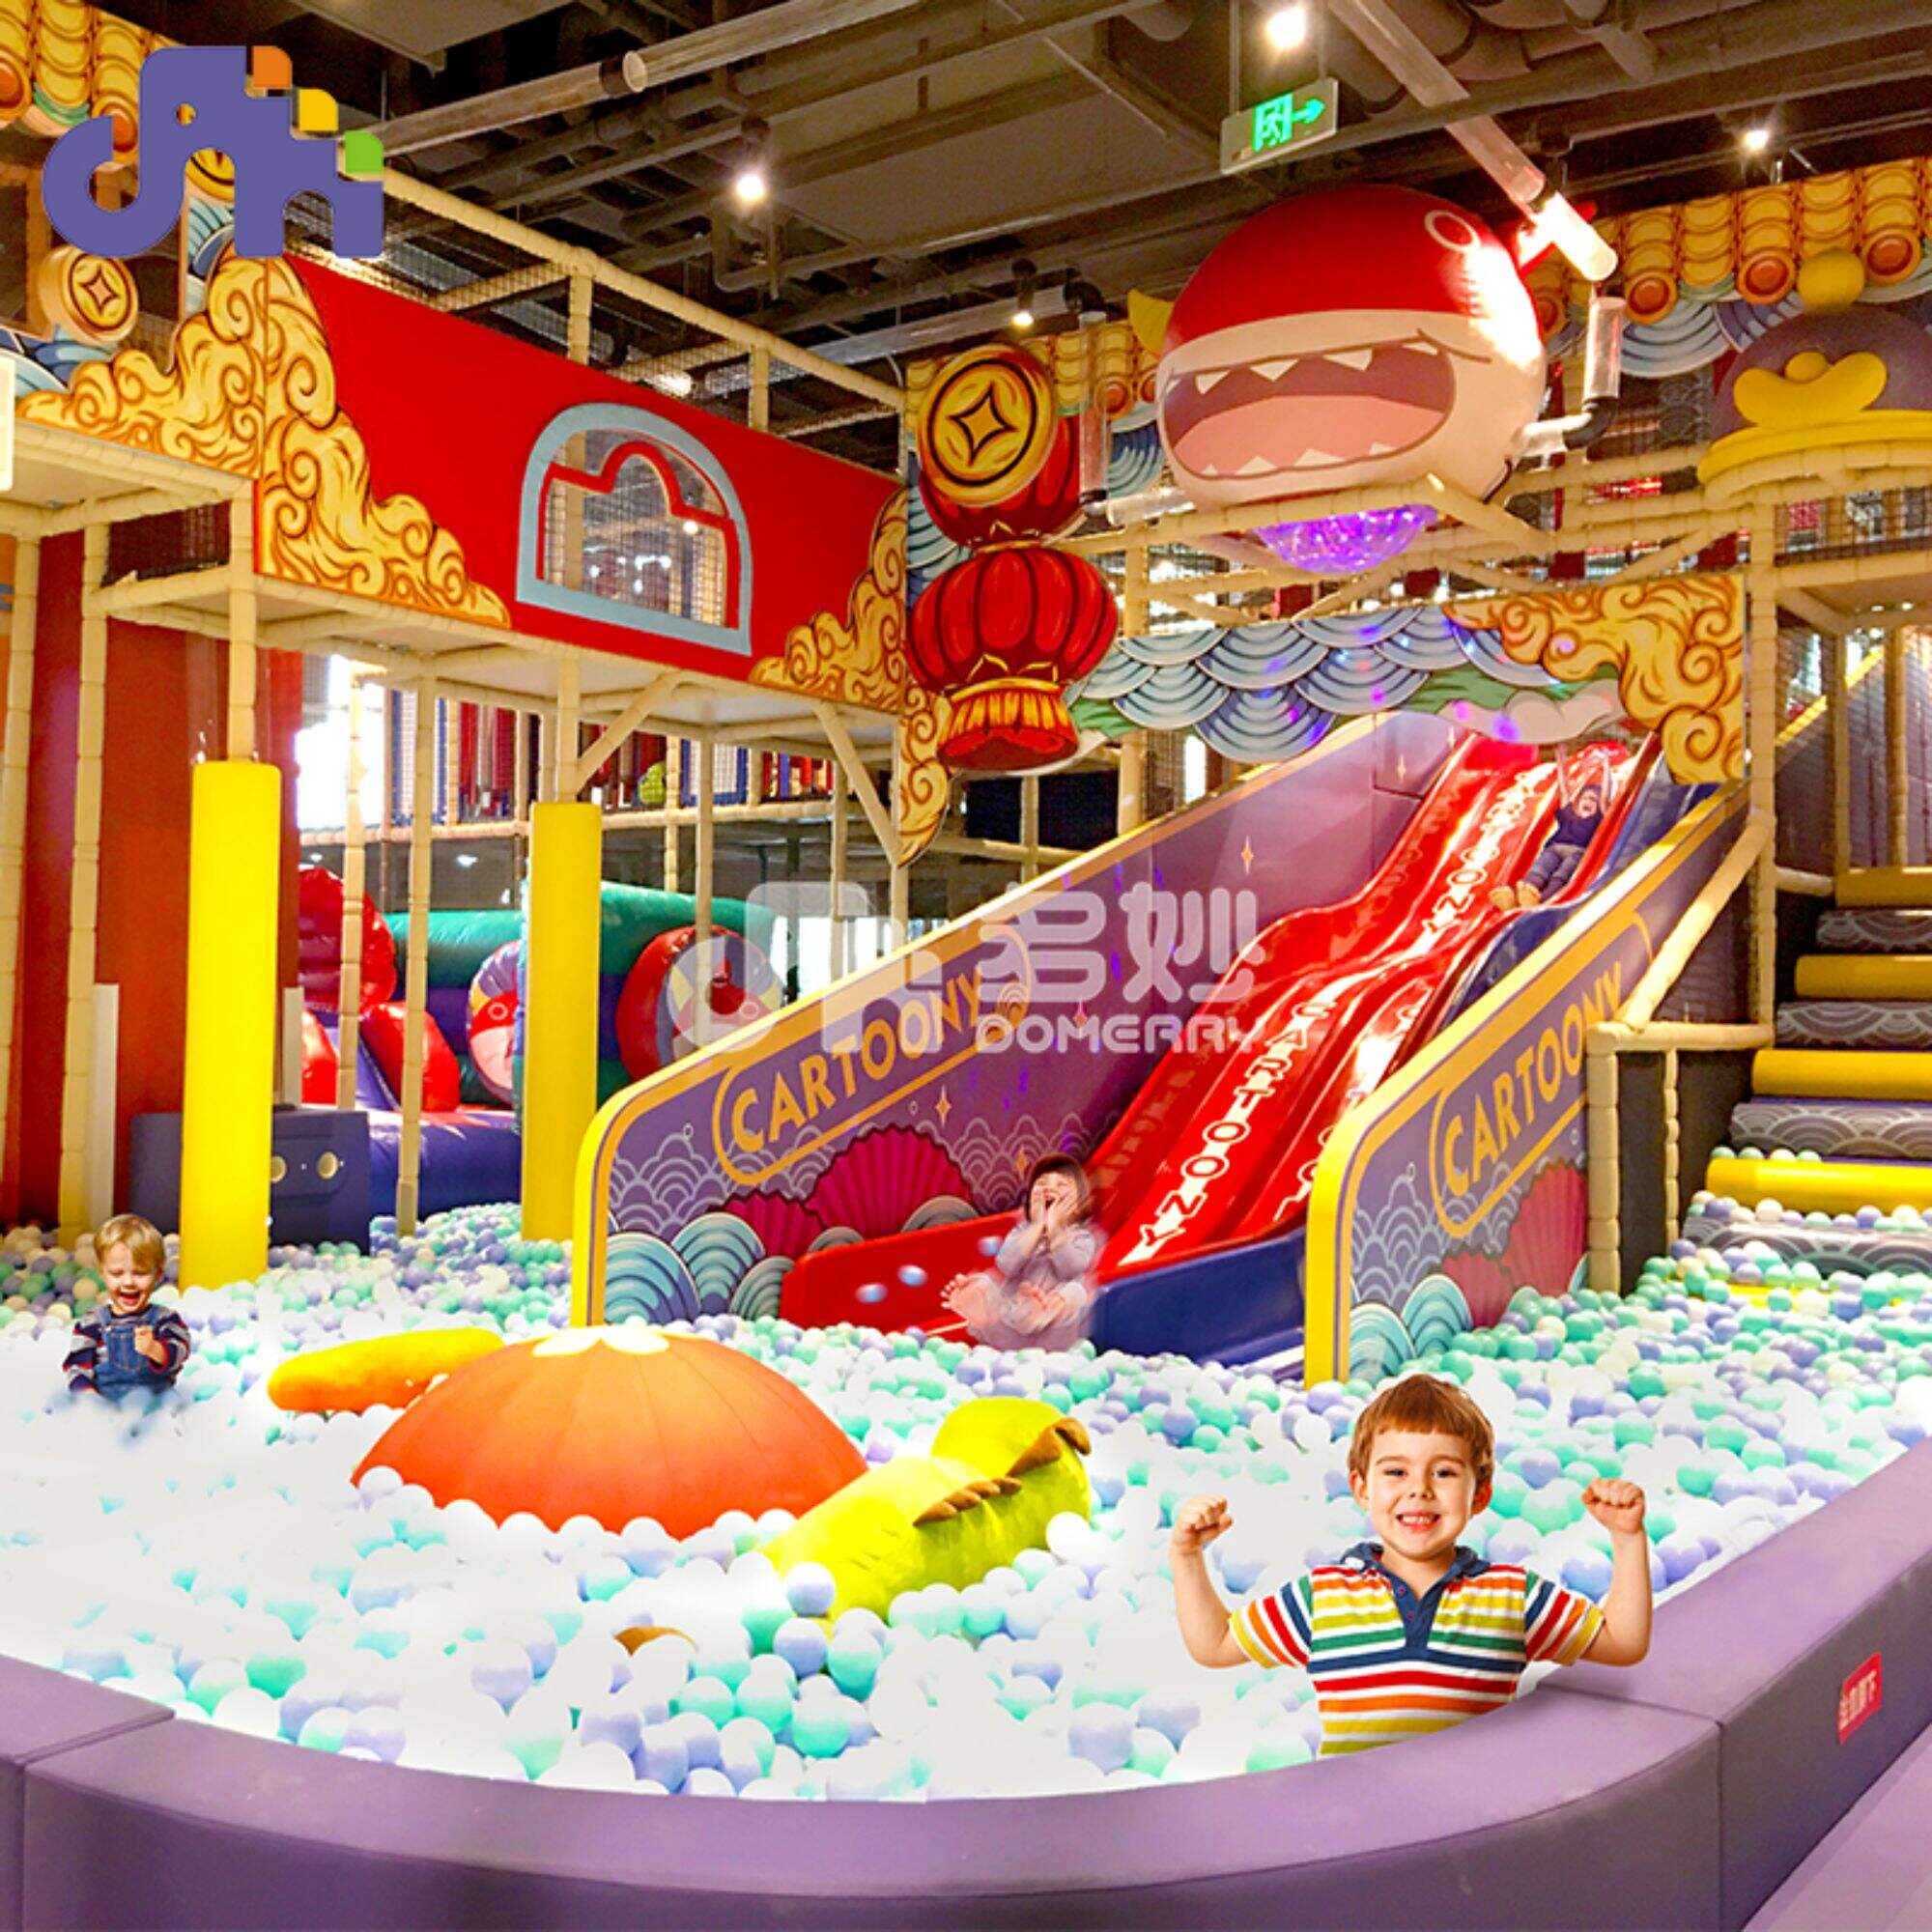 Domerry персонализирана тема детска закрита пързалка детска площадка комплект за игра оборудване топка басейн къща за игра